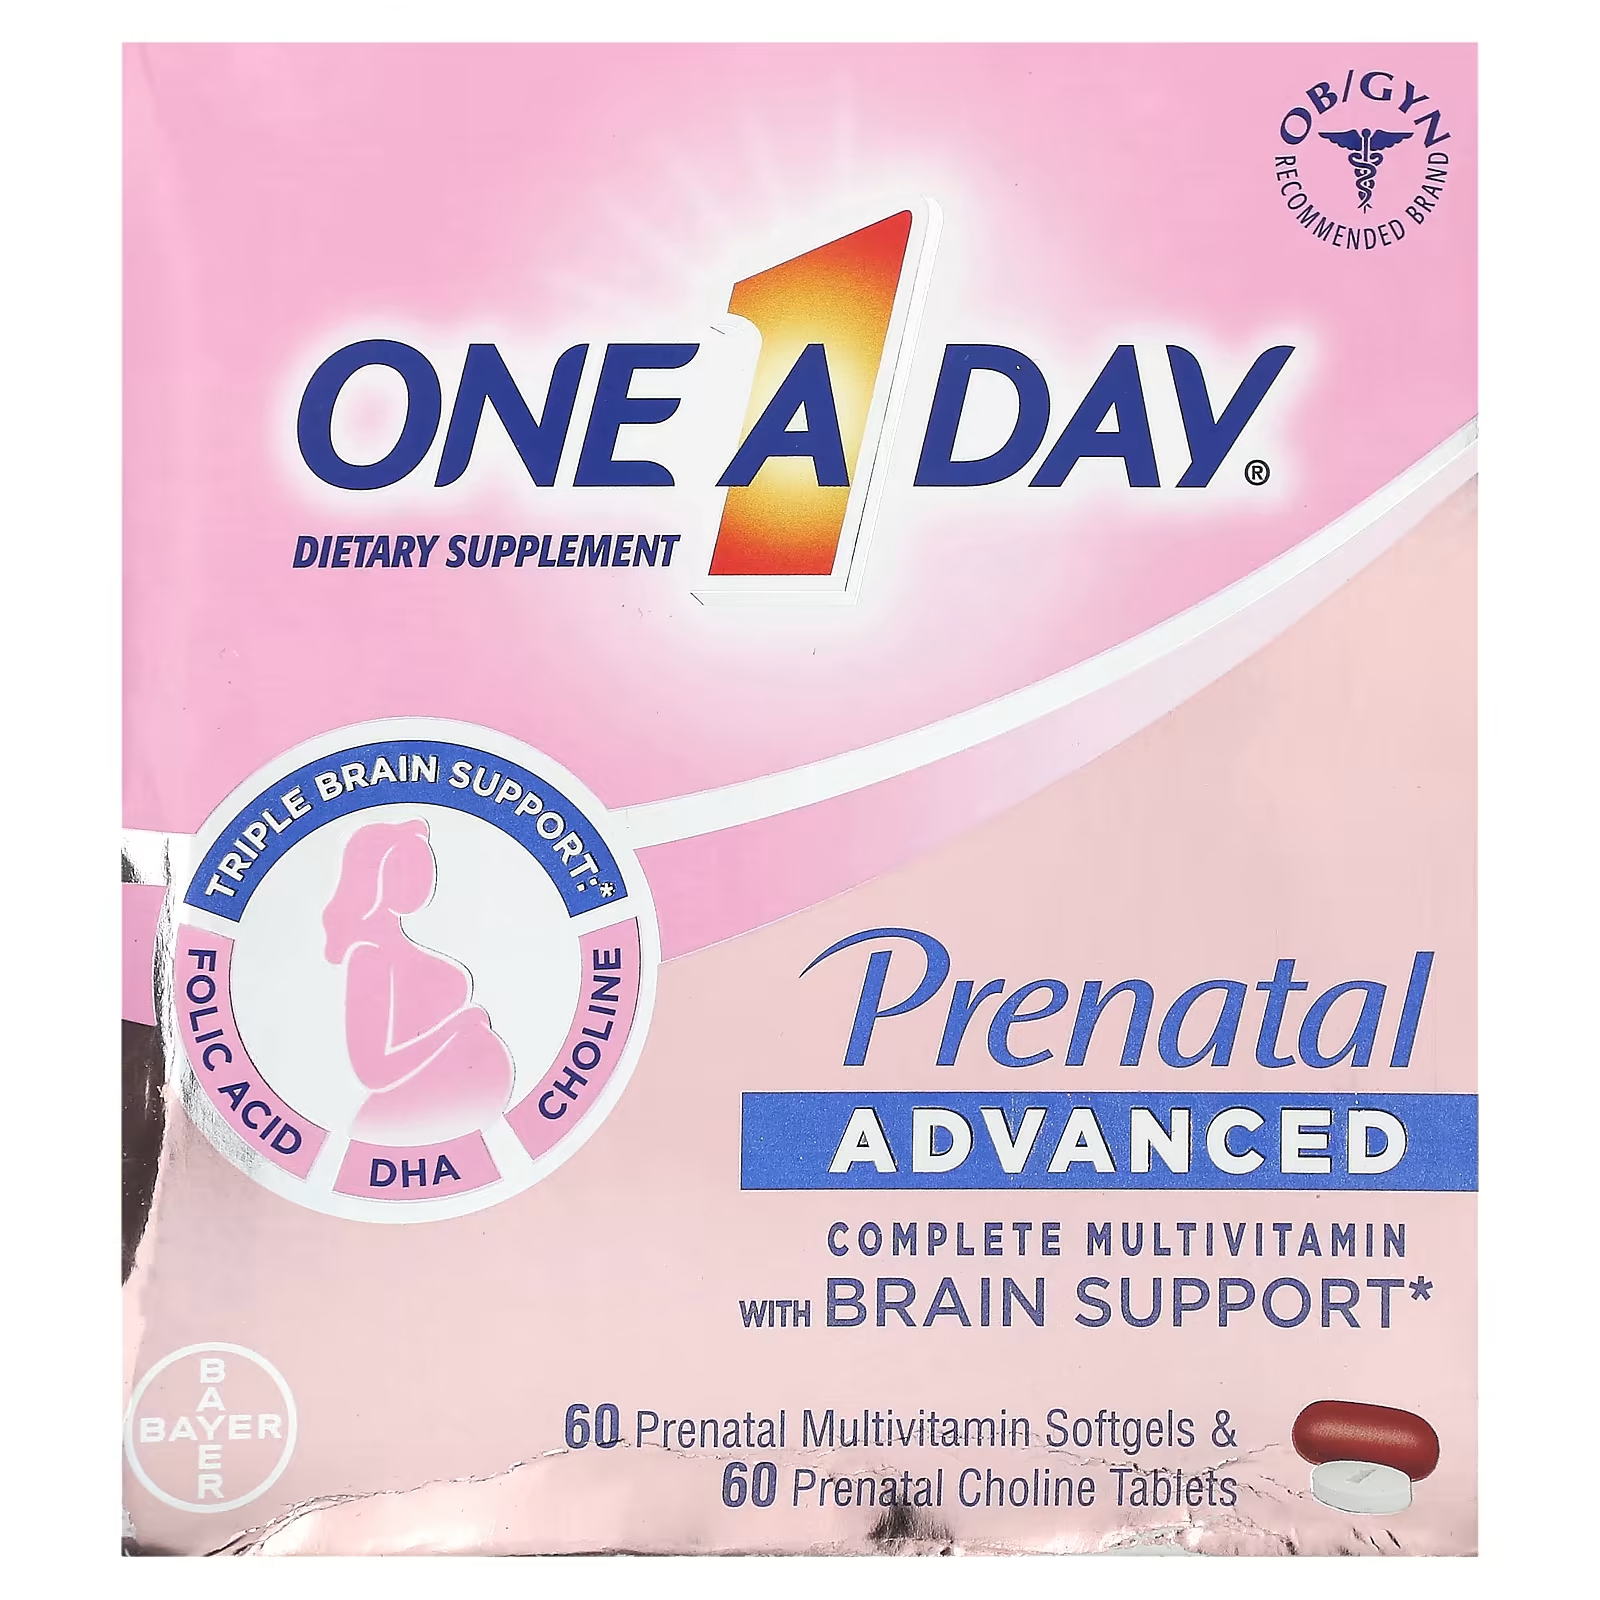 Комплексный комплексный мультивитамин для беременных один раз в день с поддержкой мозга, 60 мягких мультивитаминных таблеток для беременных и 60 таблеток холина для беременных One-A-Day цена и фото